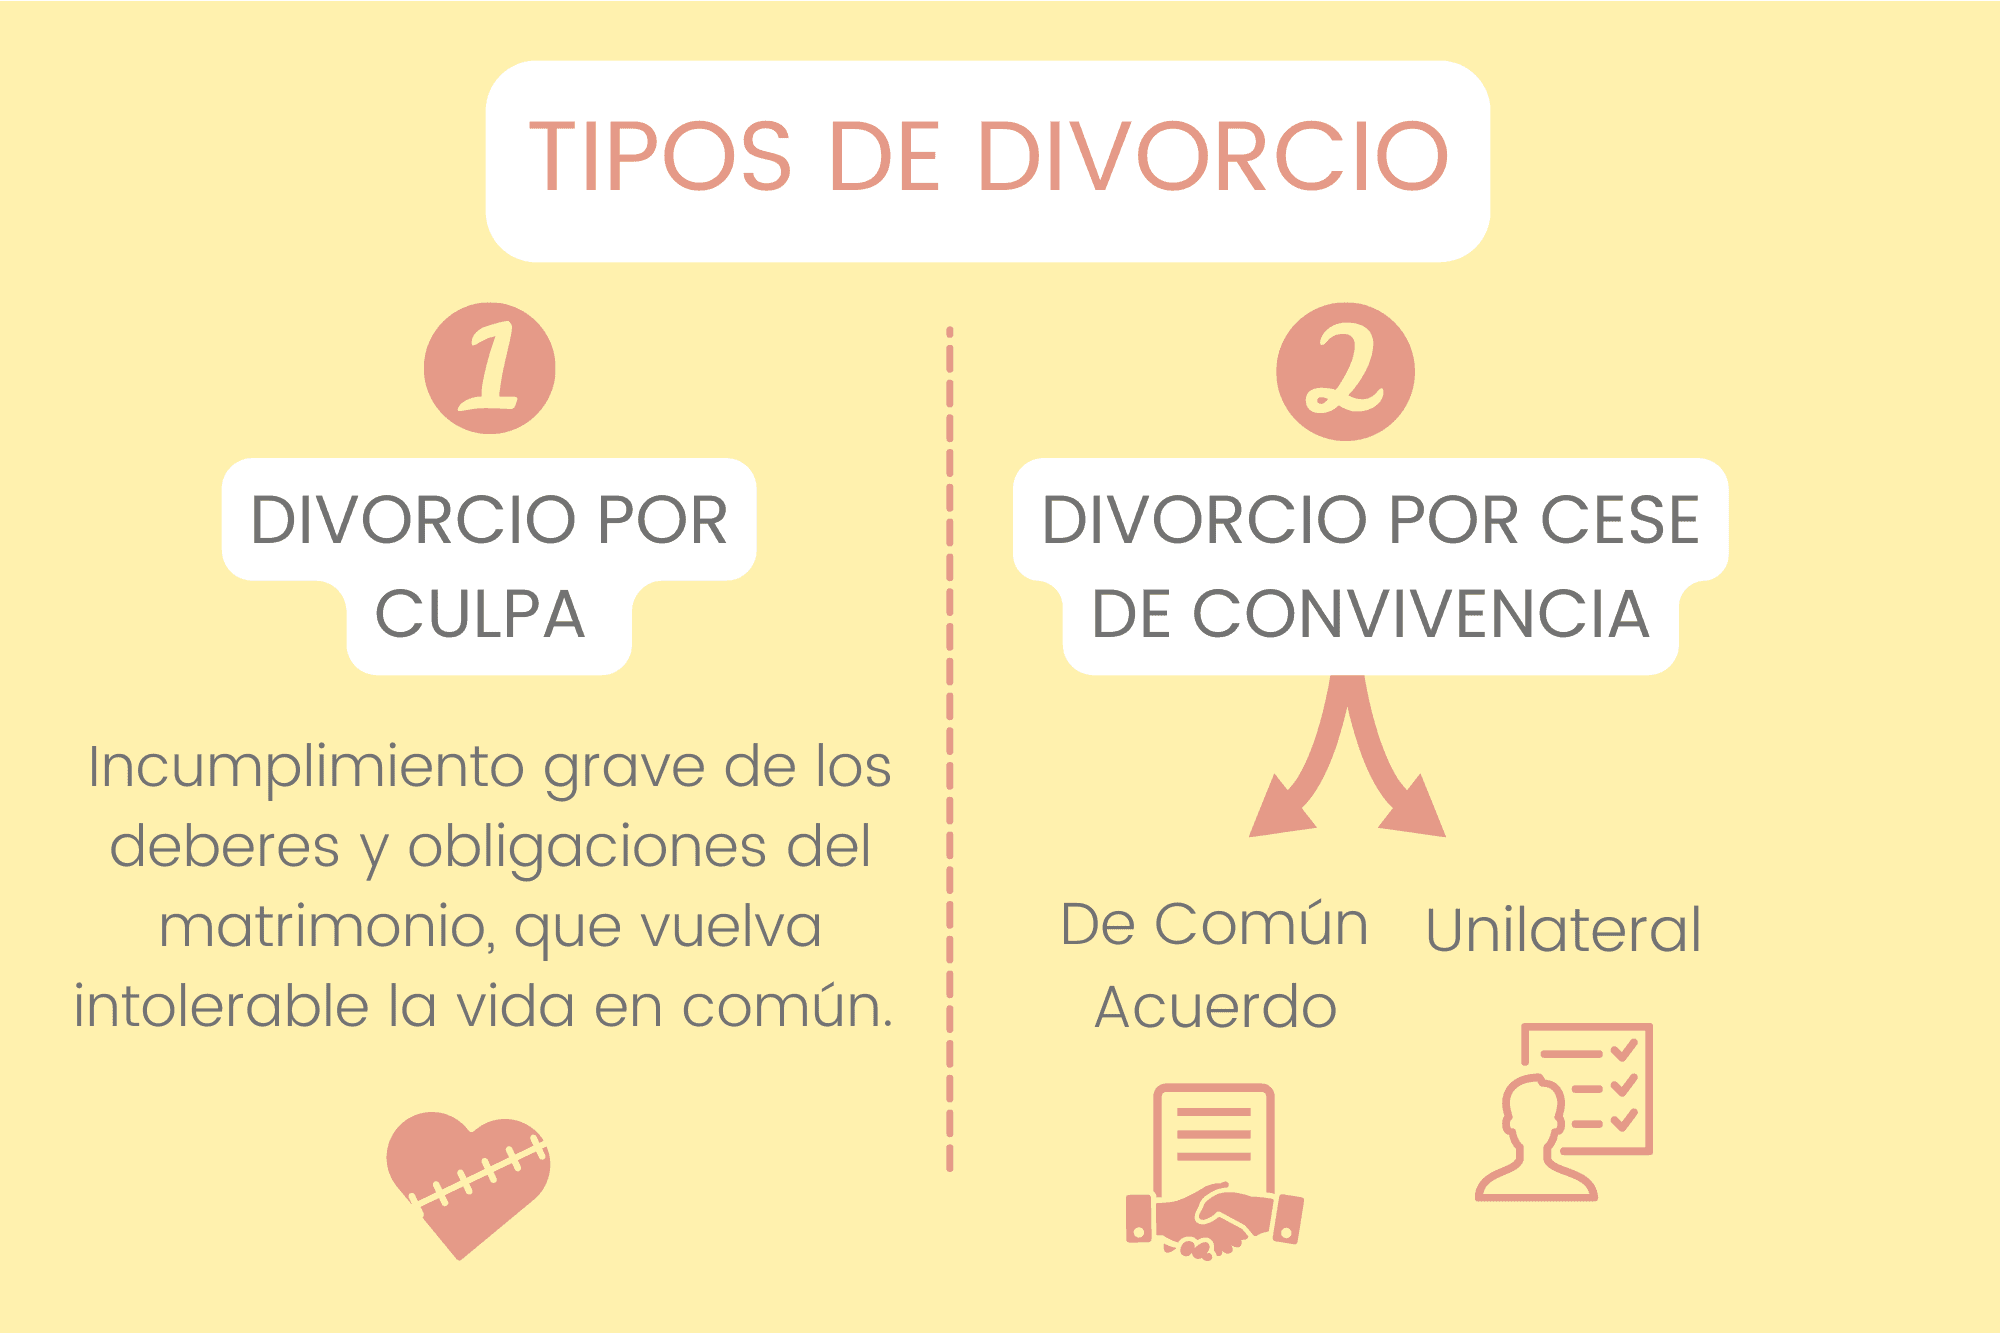 DIVORCIO EN CHILE